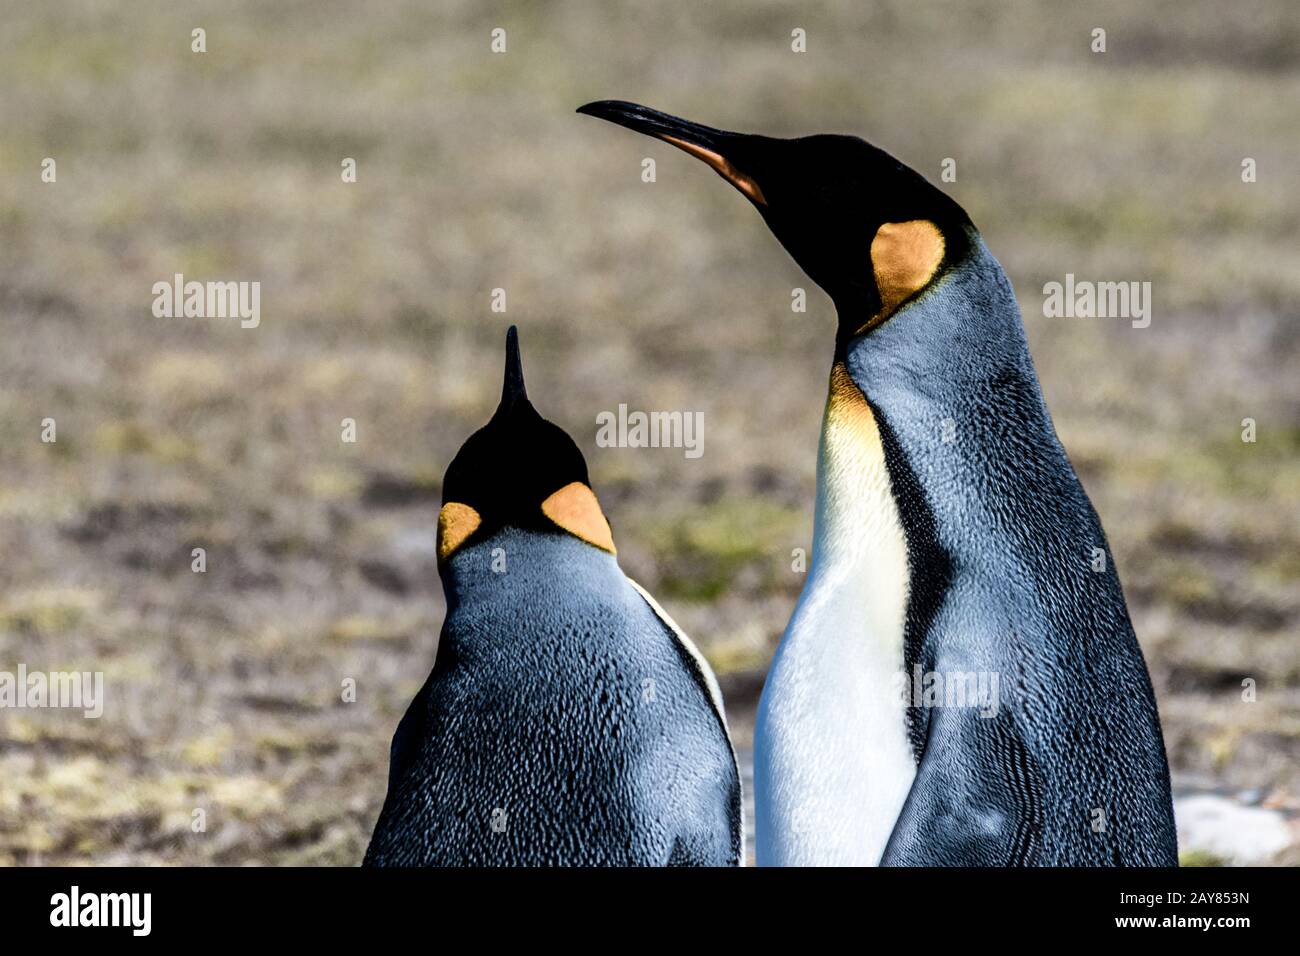 Nahaufnahme eines Paares von King Penguins, Aptenodytes patagonicus, Saunders Island, Falklandinseln, britisches Überseegebiet Stockfoto